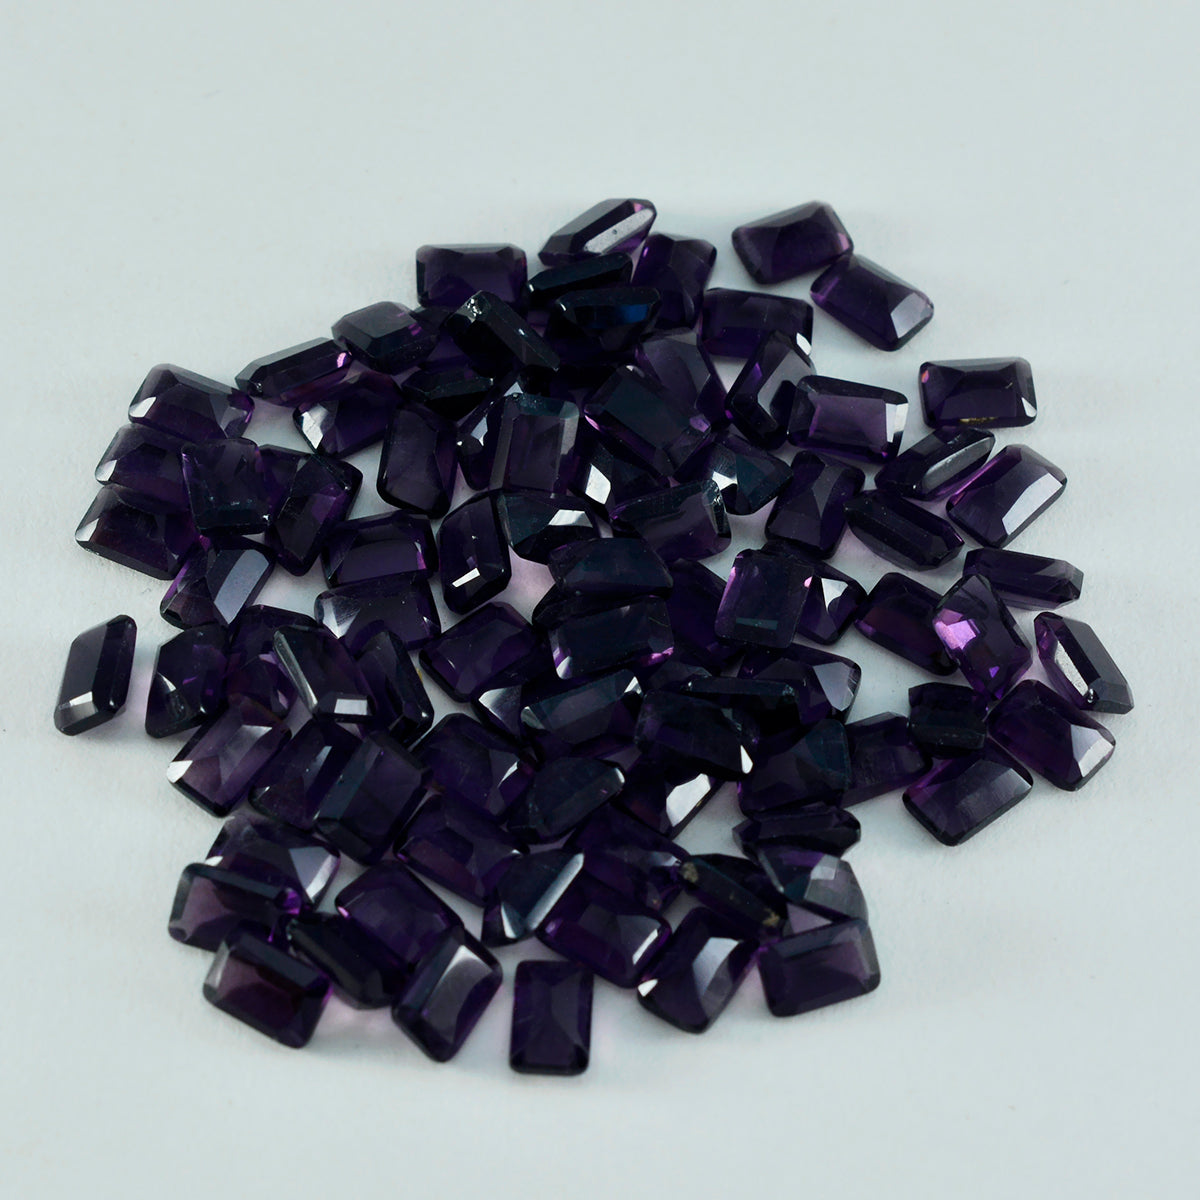 riyogems 1 шт. фиолетовый аметист cz граненый 5x7 мм восьмиугольной формы качественный свободный камень